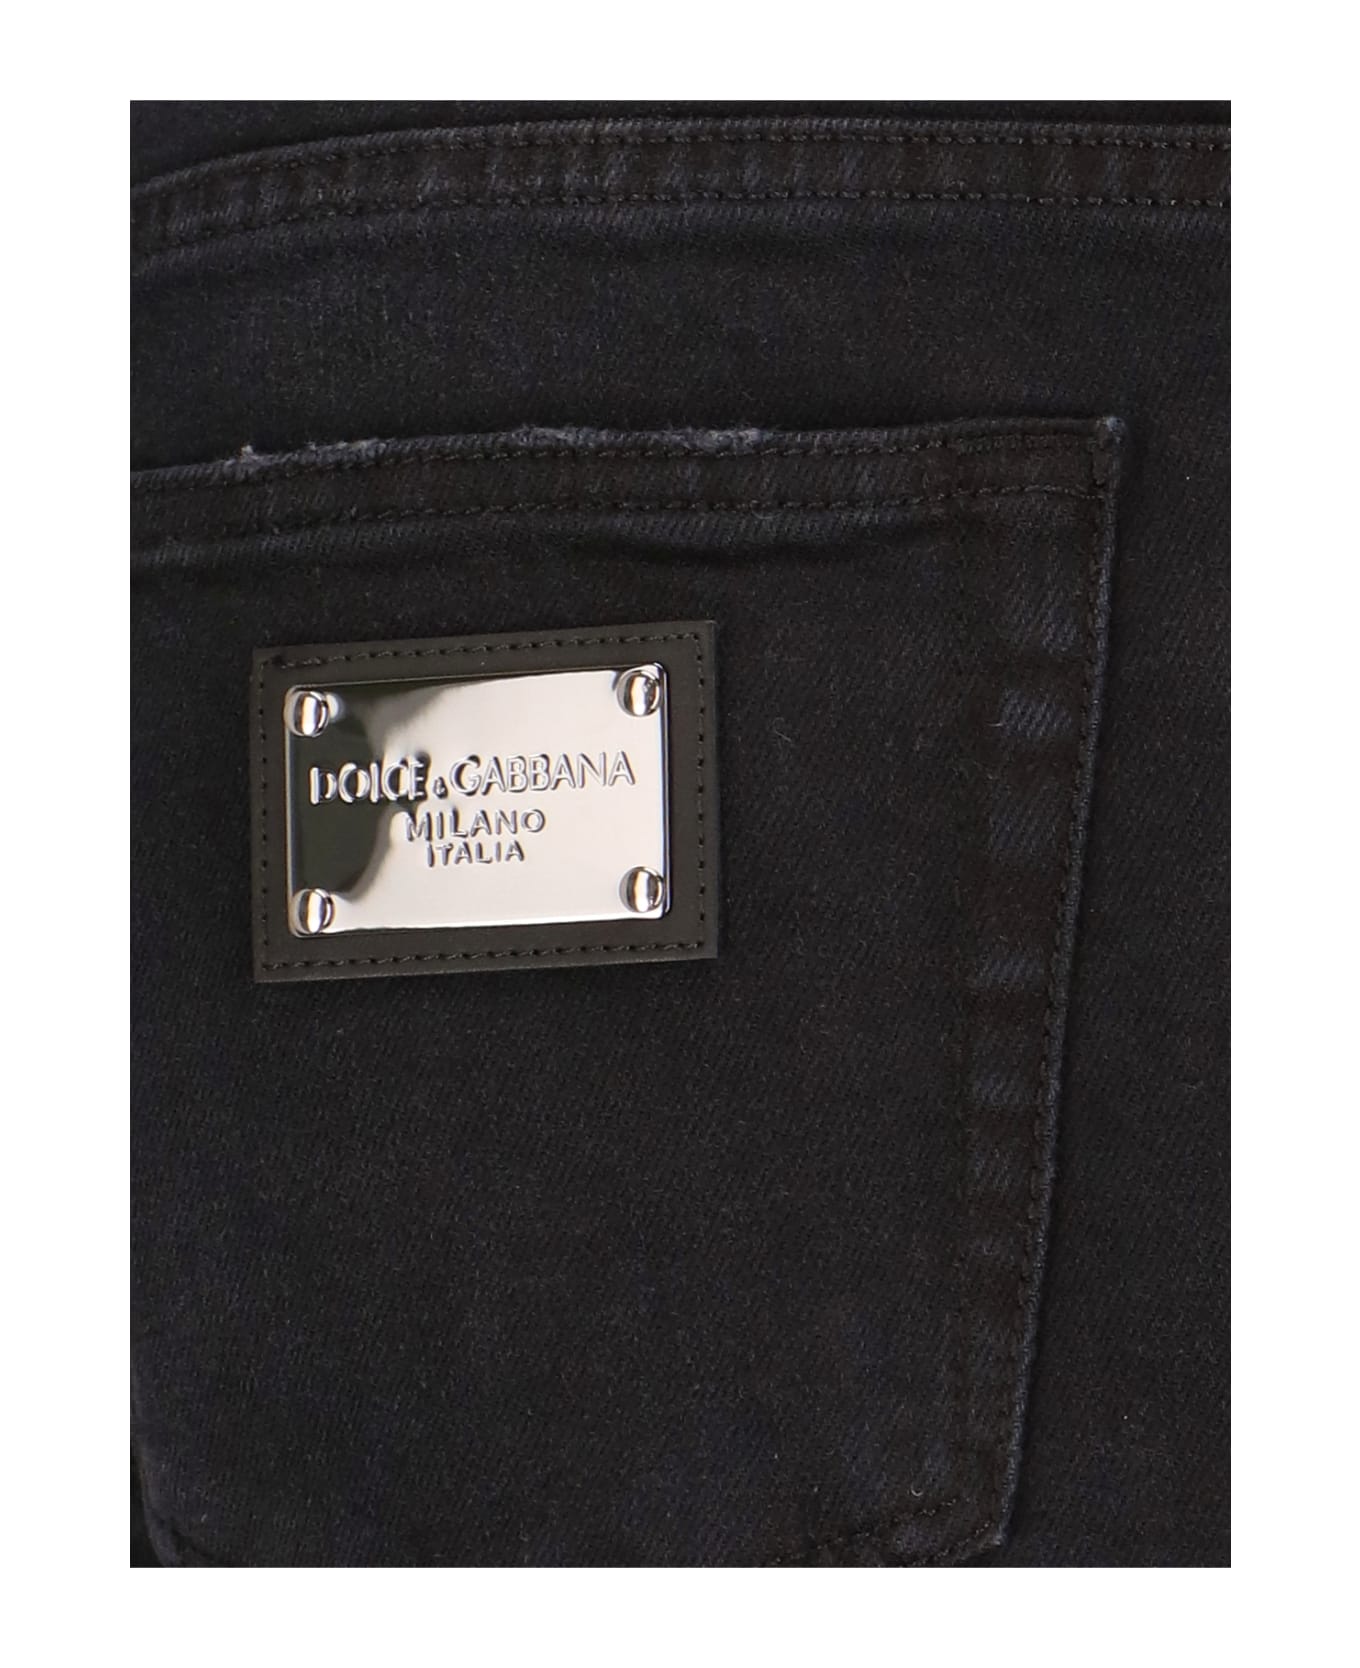 Dolce & Gabbana Slim Jeans - Black